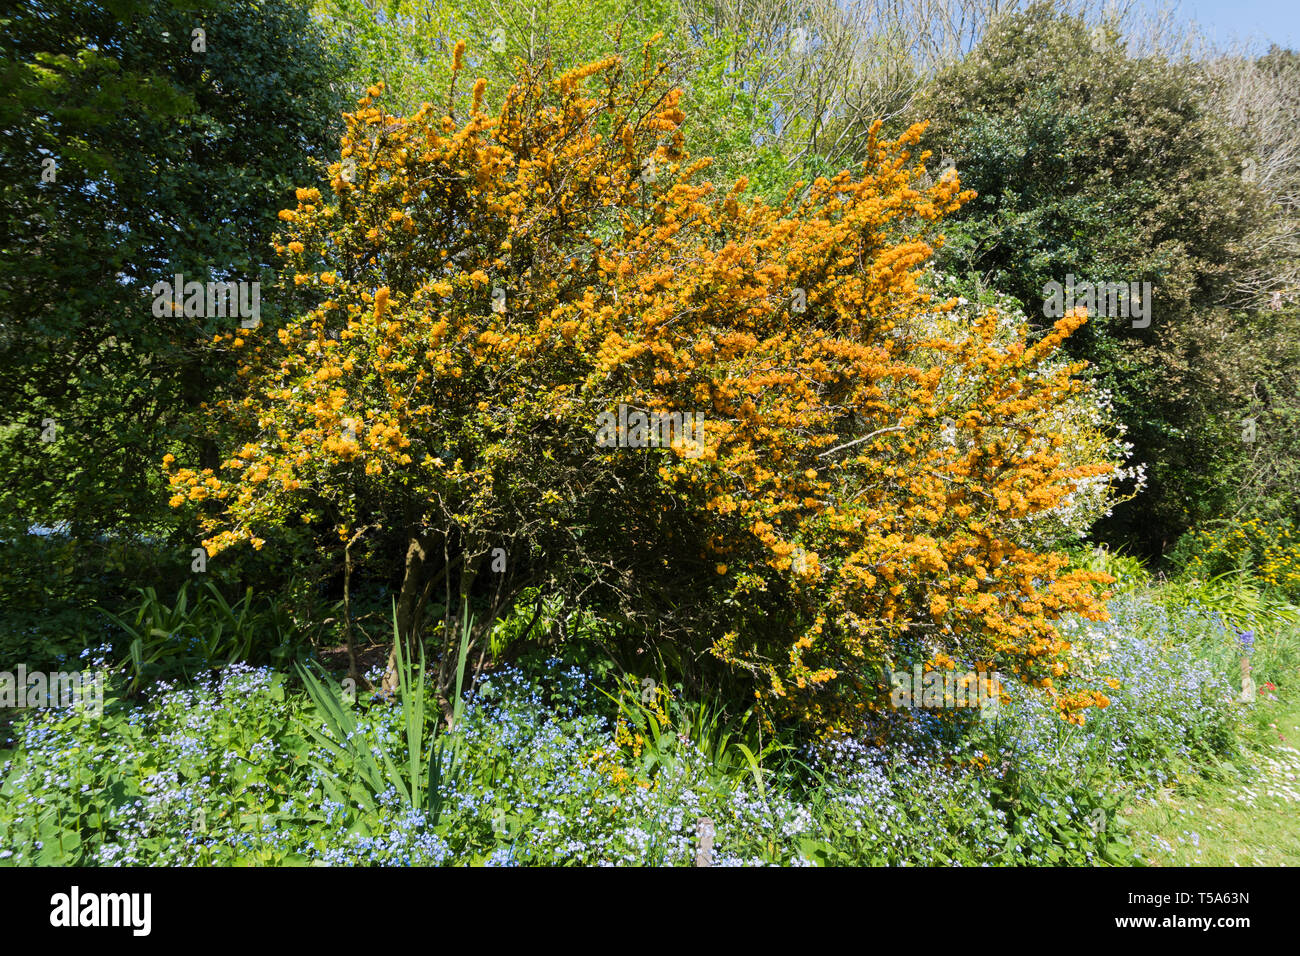 Berberis darwinii (Darwin's) de l'épine-vinette arbuste avec des fleurs orange et feuilles dentées-rachis au printemps (avril) dans le West Sussex, Angleterre, Royaume-Uni. Banque D'Images